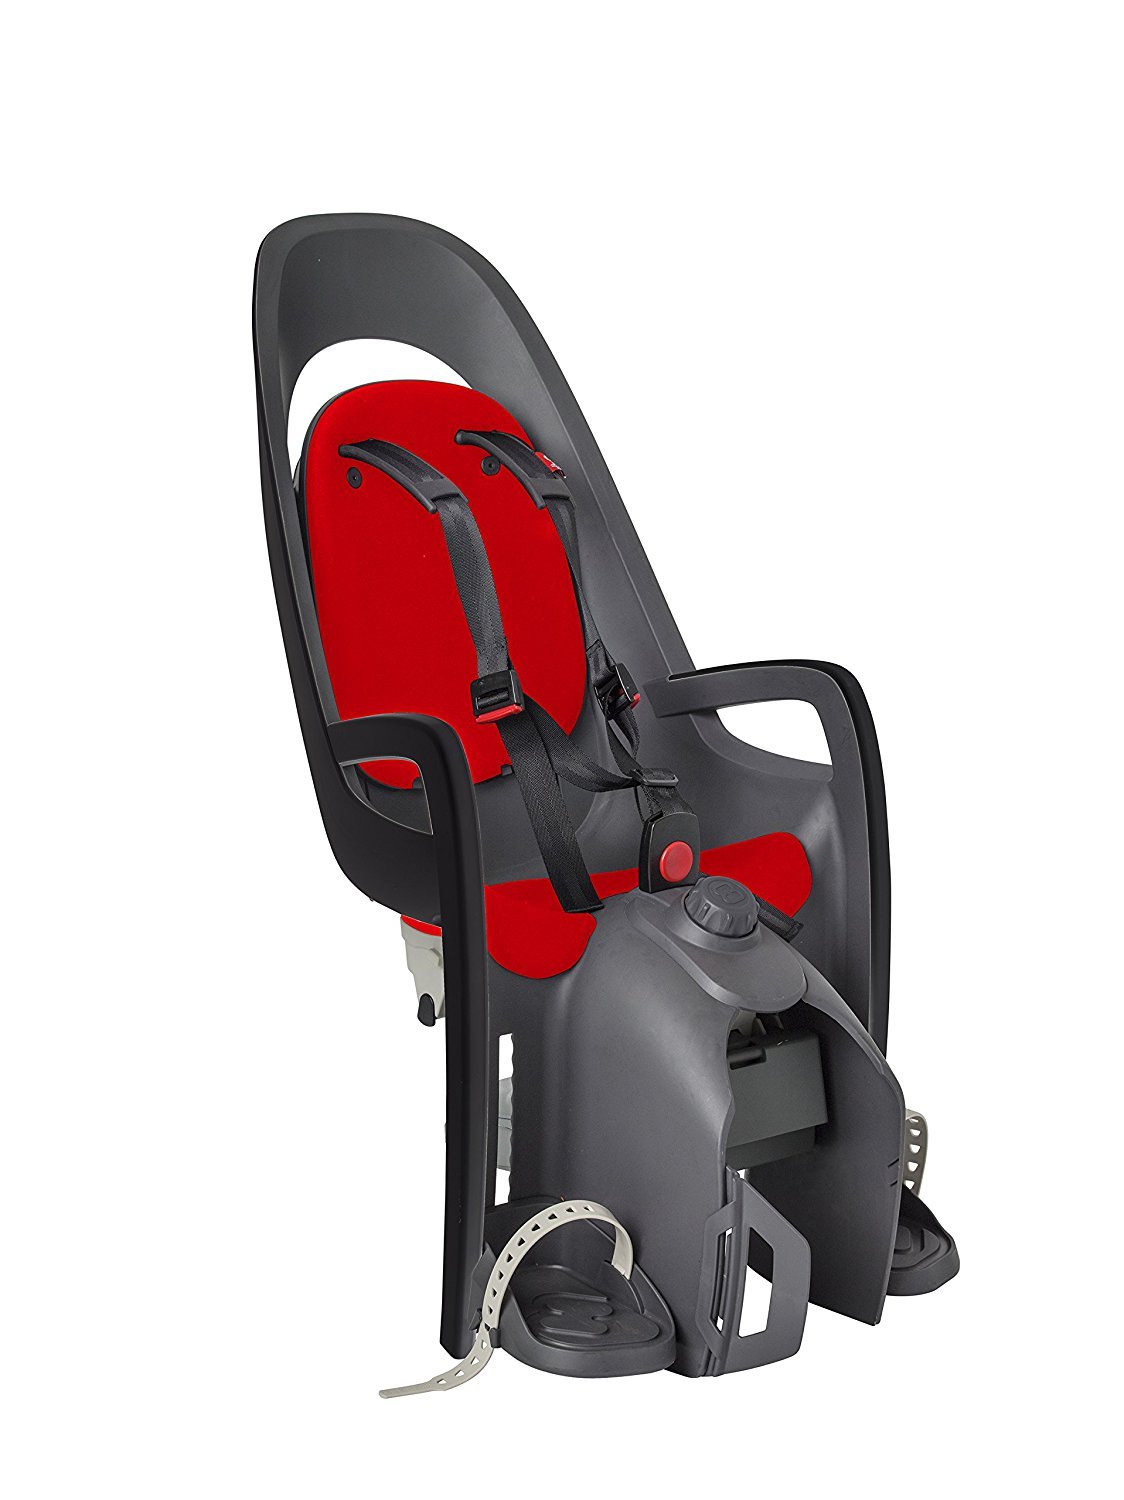 Детское велокресло HAMAX CARESS с адаптером для багажника, серый/красный, до 25 кг, 553013